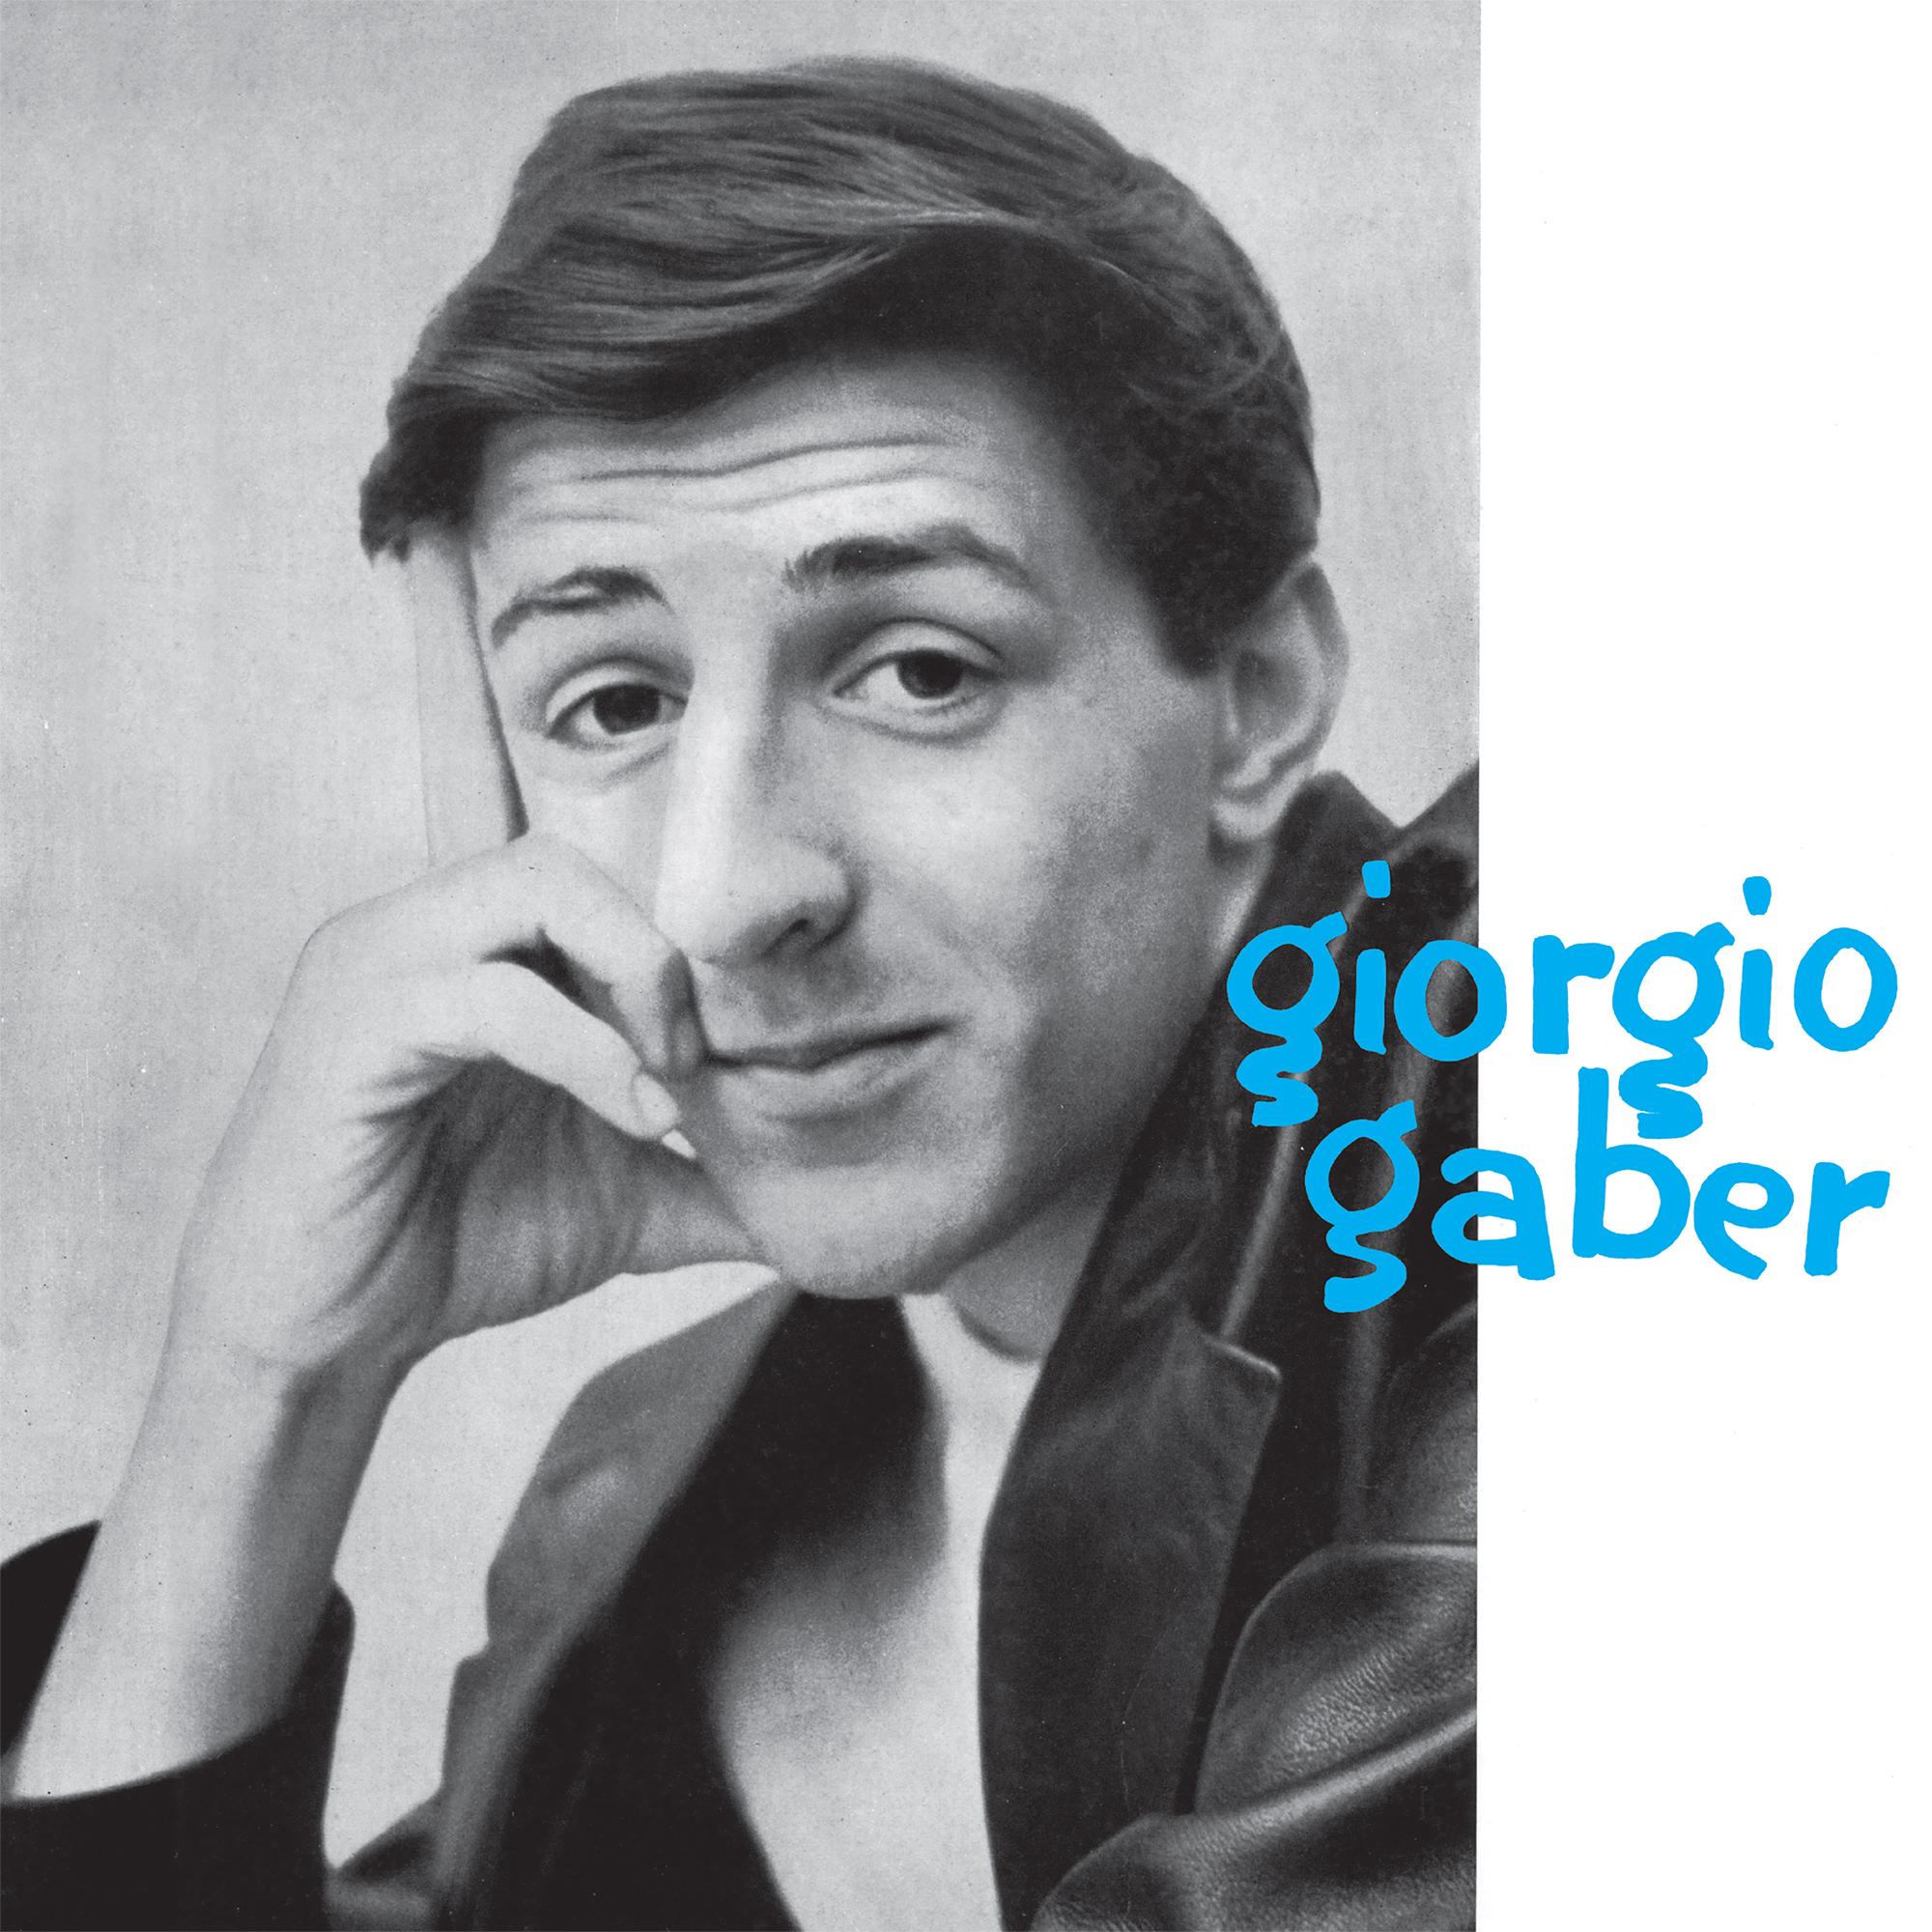 Gaber Giorgio - Giorgio Gaber Lp 180 Gr. - Picture 1 of 1